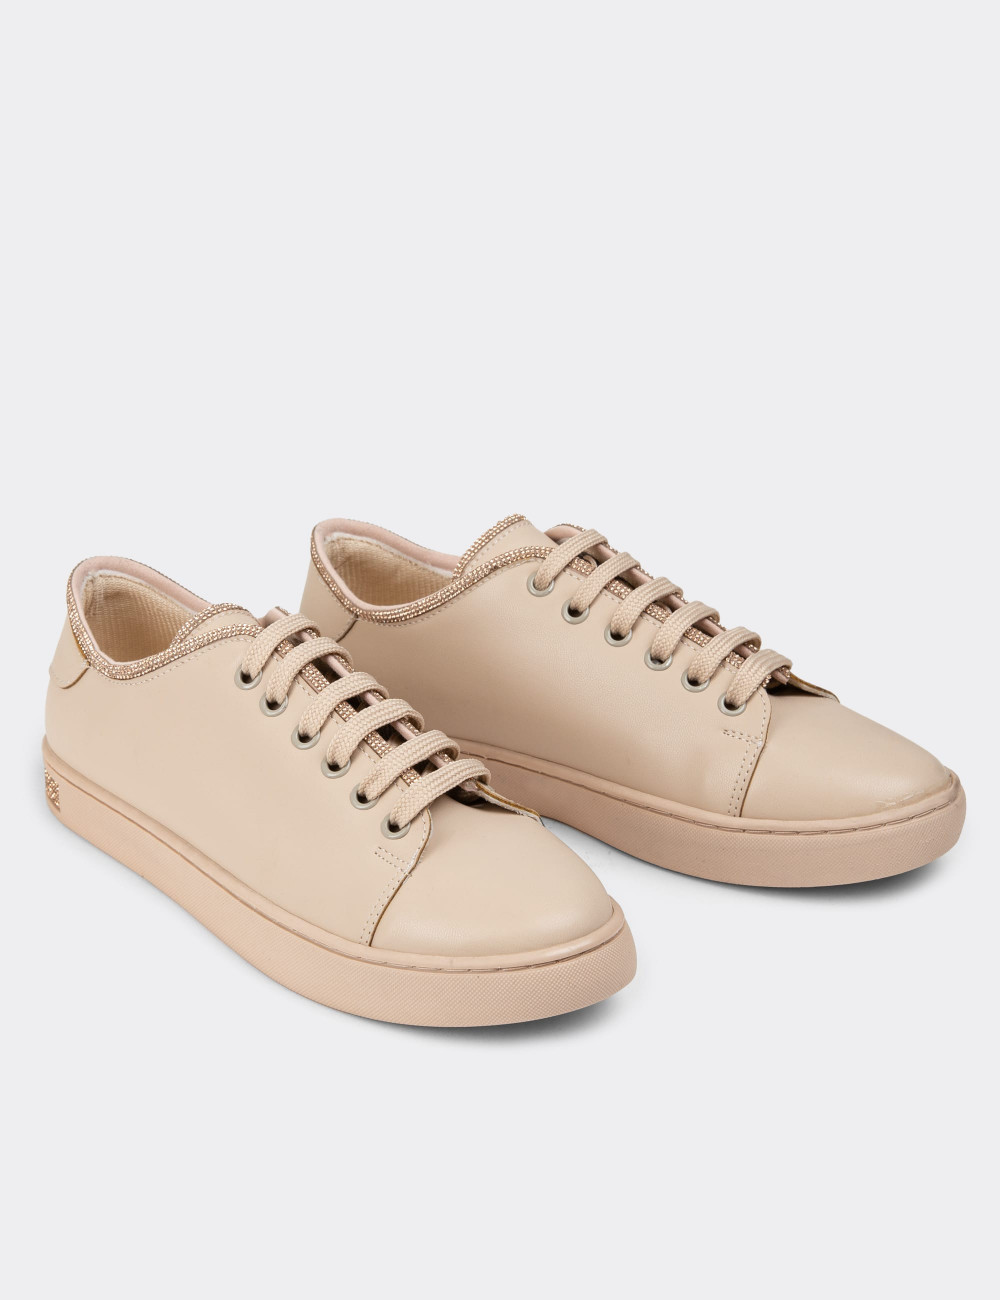 Bej Rengi Kadın Taşlı Sneaker Ayakkabı - K0600ZBEJC01